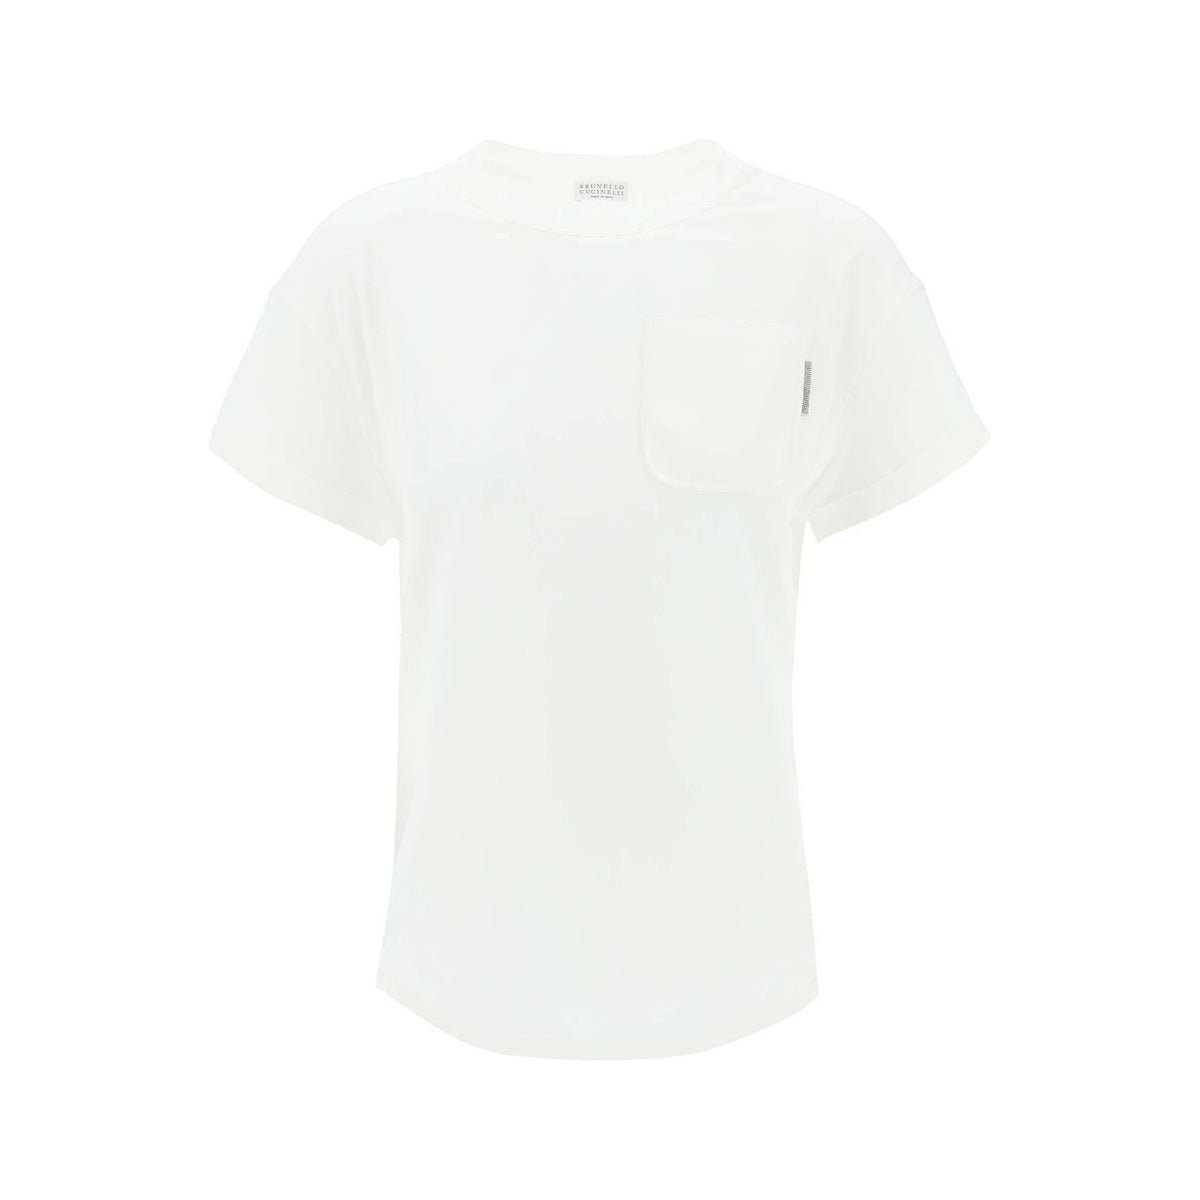 White Cotton Monili Pocket T-Shirt BRUNELLO CUCINELLI JOHN JULIA.